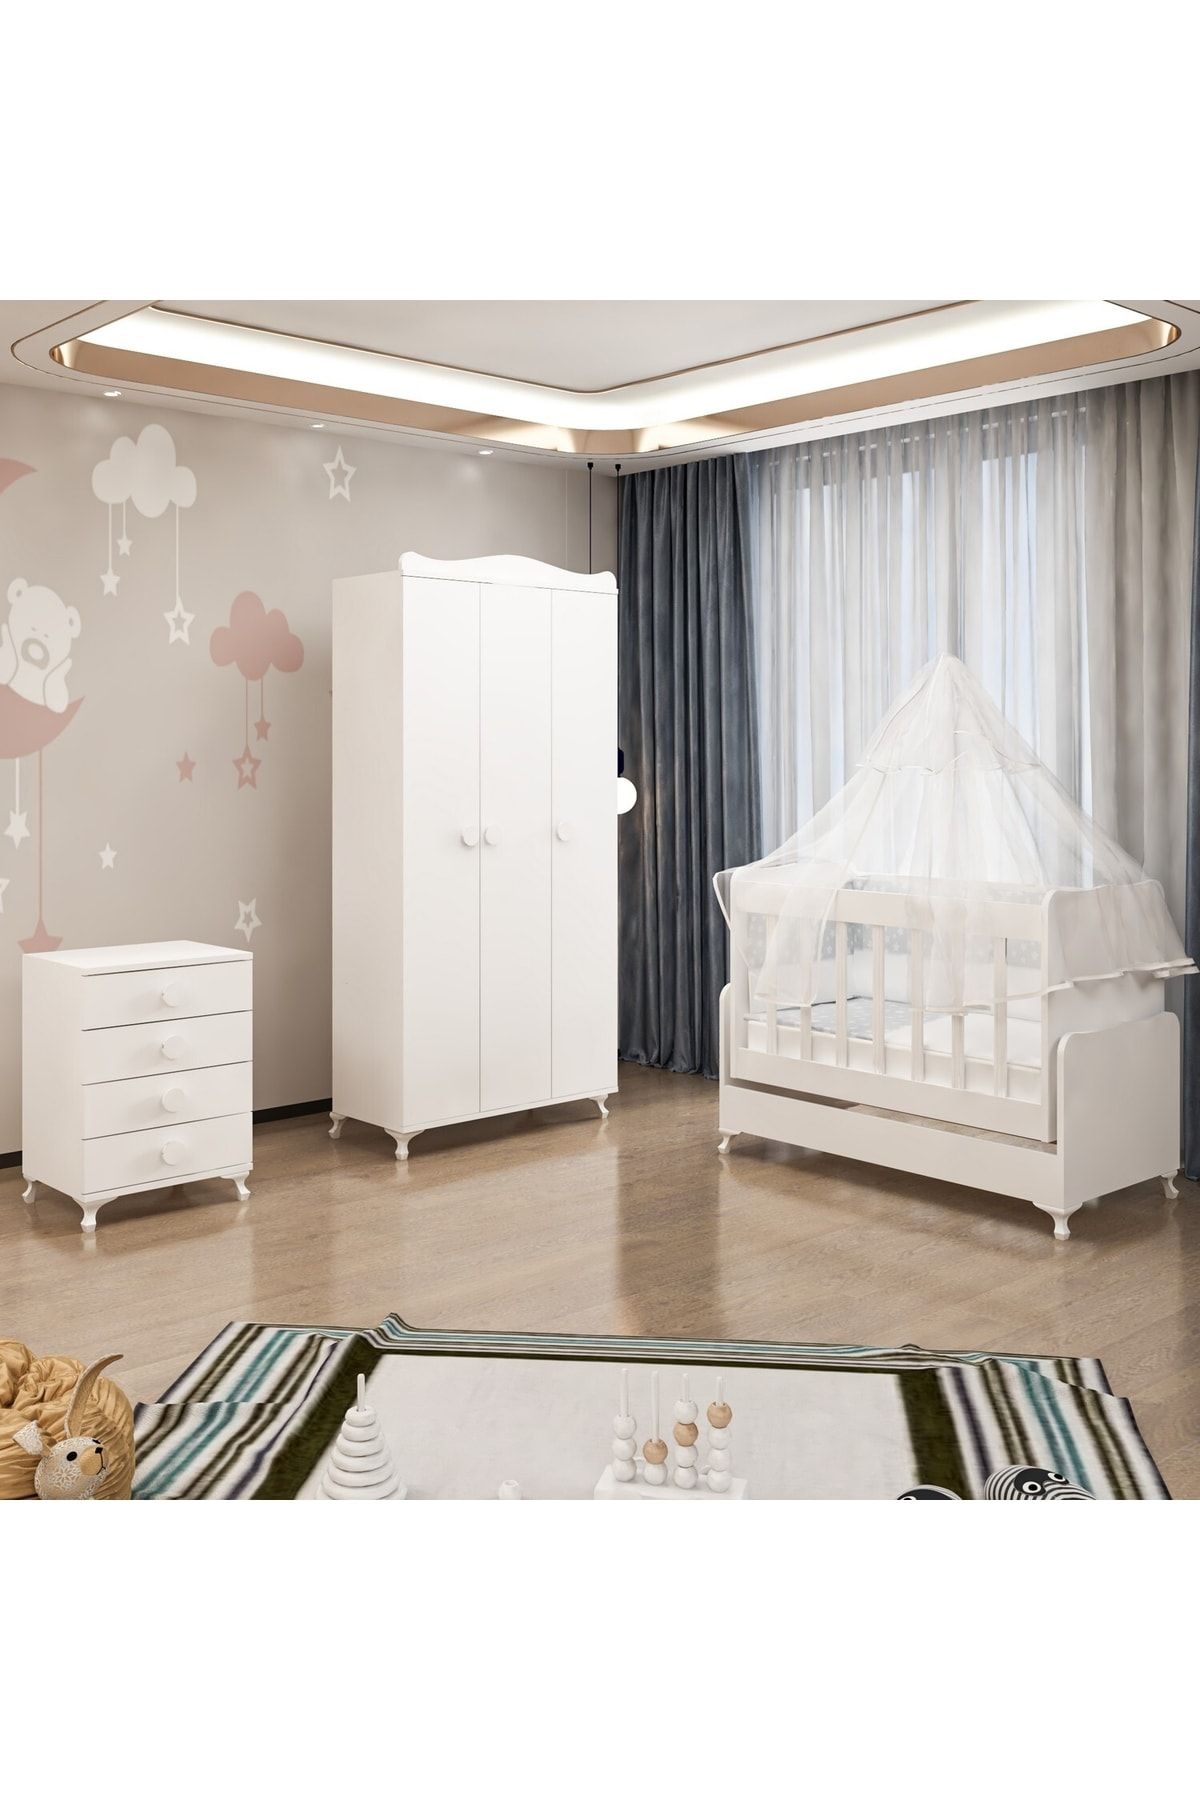 Garaj Home Dora 50x100 Yıldız 3lü Bebek Odası Beyaz Uyku Seti Kombinli-uyku Seti-krem